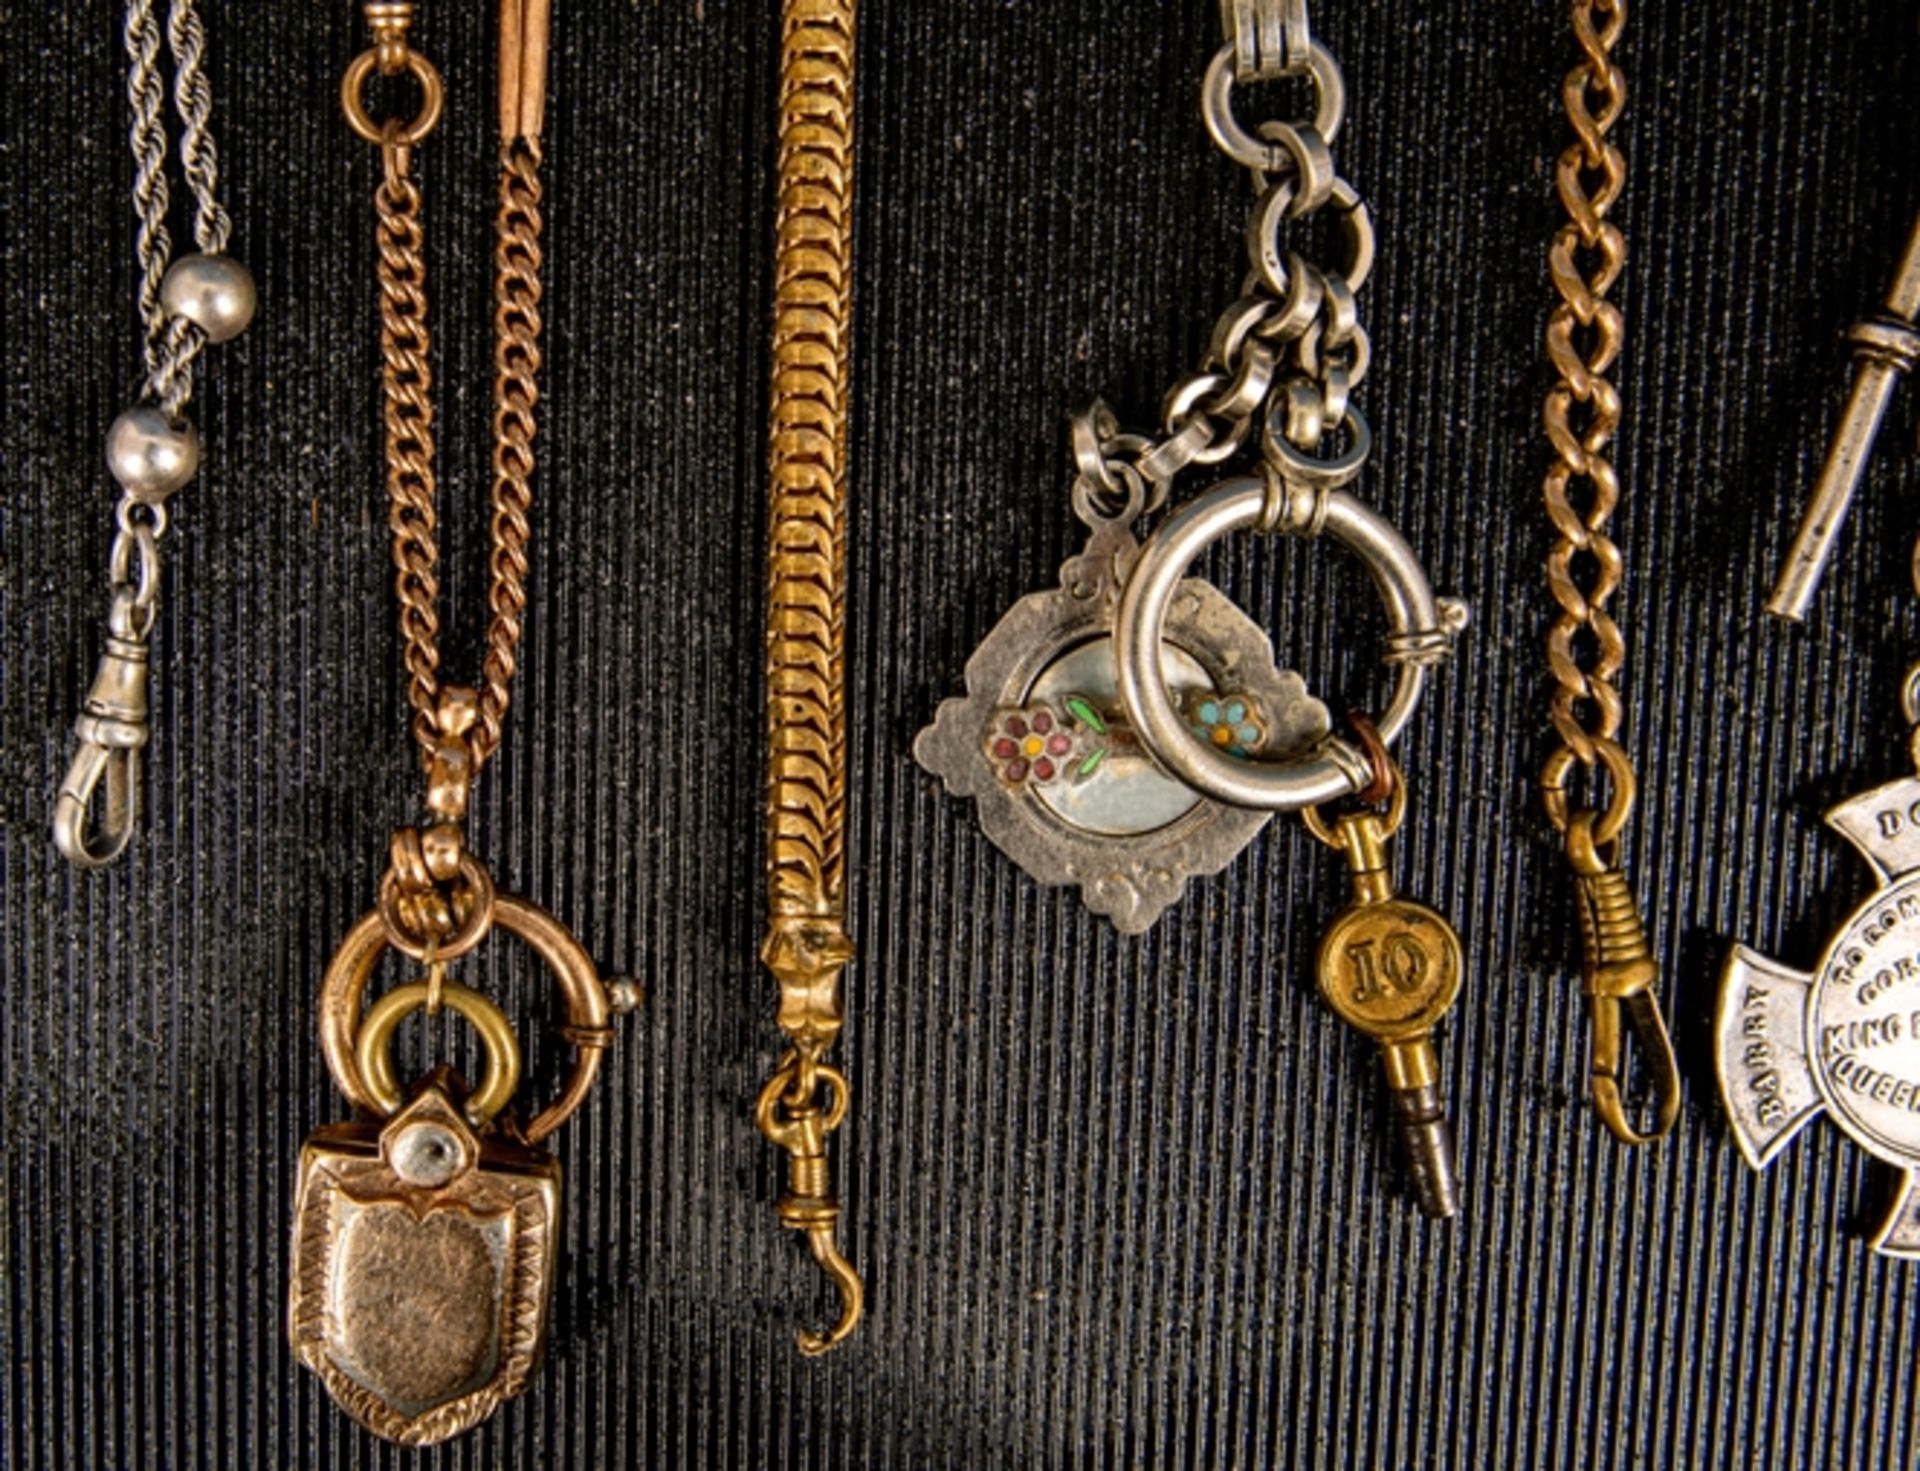 8teilige Sammlung versch. Taschenuhrenketten. Versch. Alter, Längen, Materialien und Erhalt, teilw. - Bild 2 aus 6